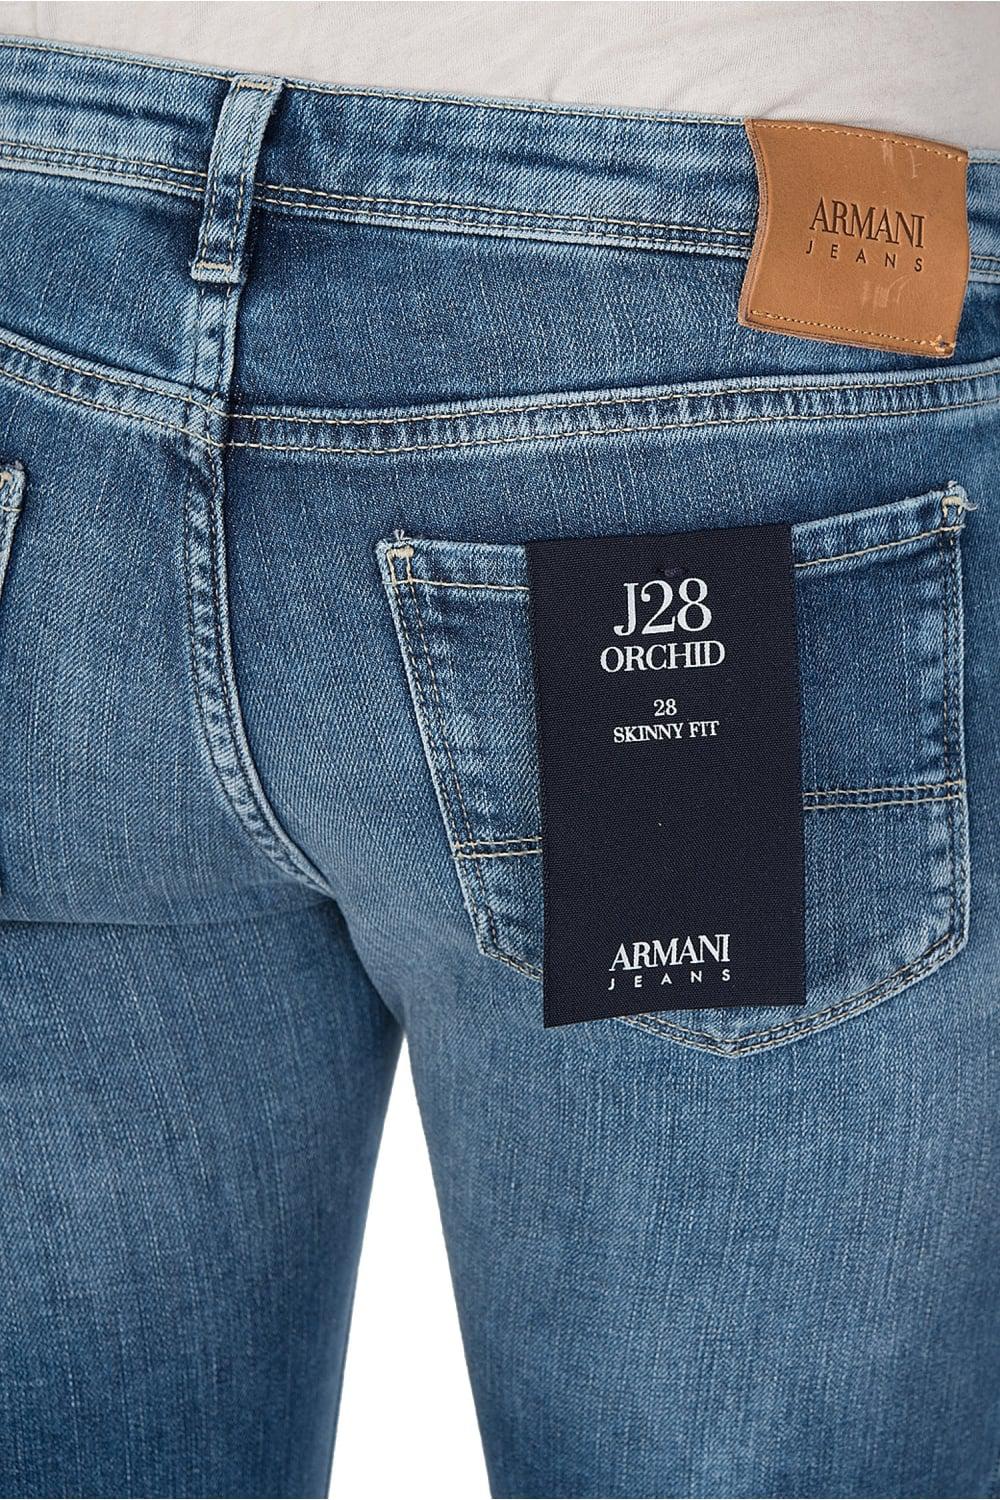 armani jeans j28 skinny fit